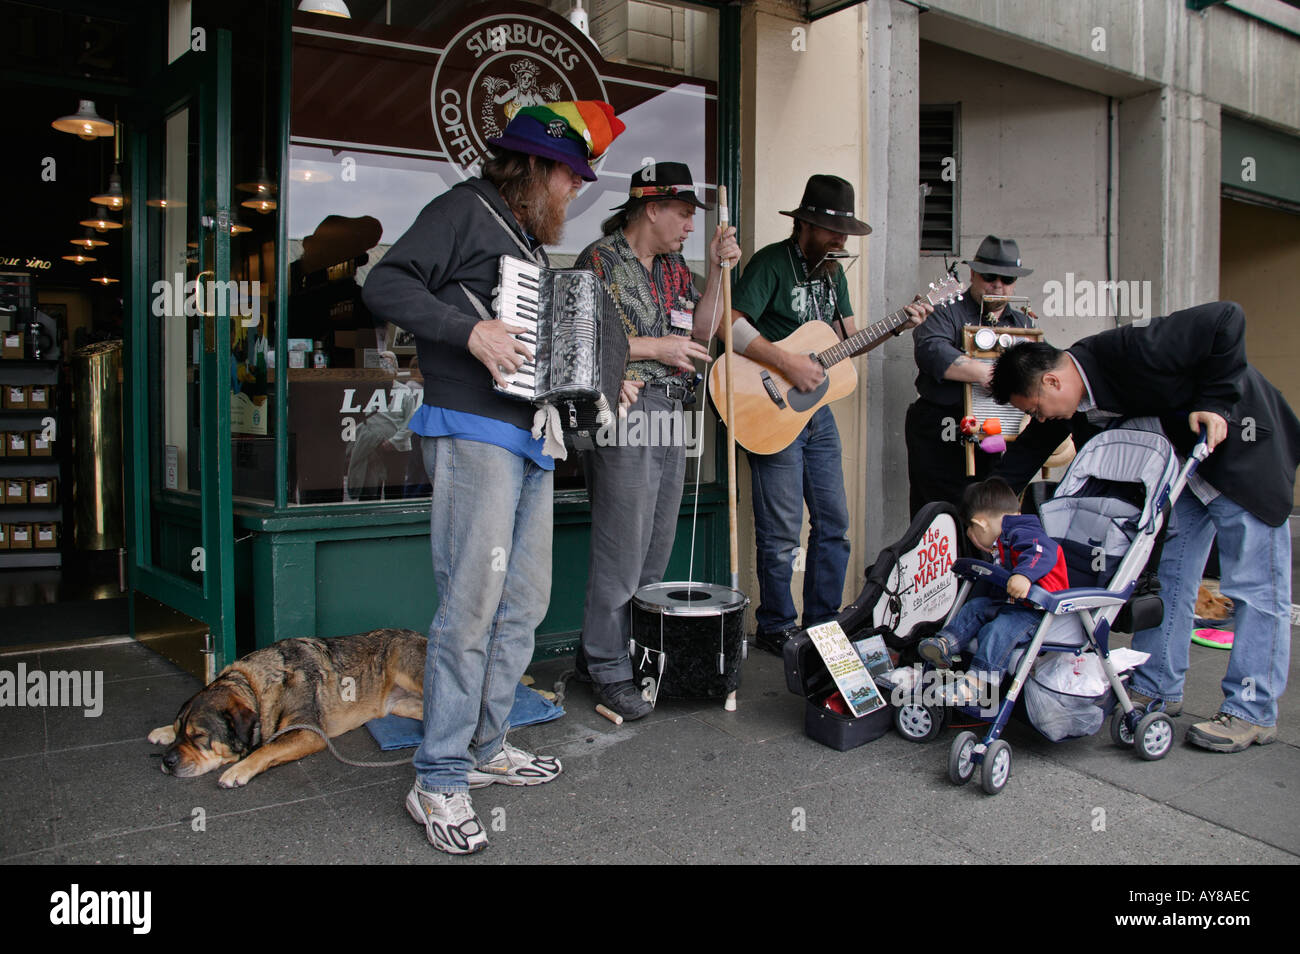 Il gruppo di quattro musicisti di strada eseguire sul marciapiede davanti a un caffè Starbucks store presso il Mercato di Pike Place in Seattle WA Foto Stock